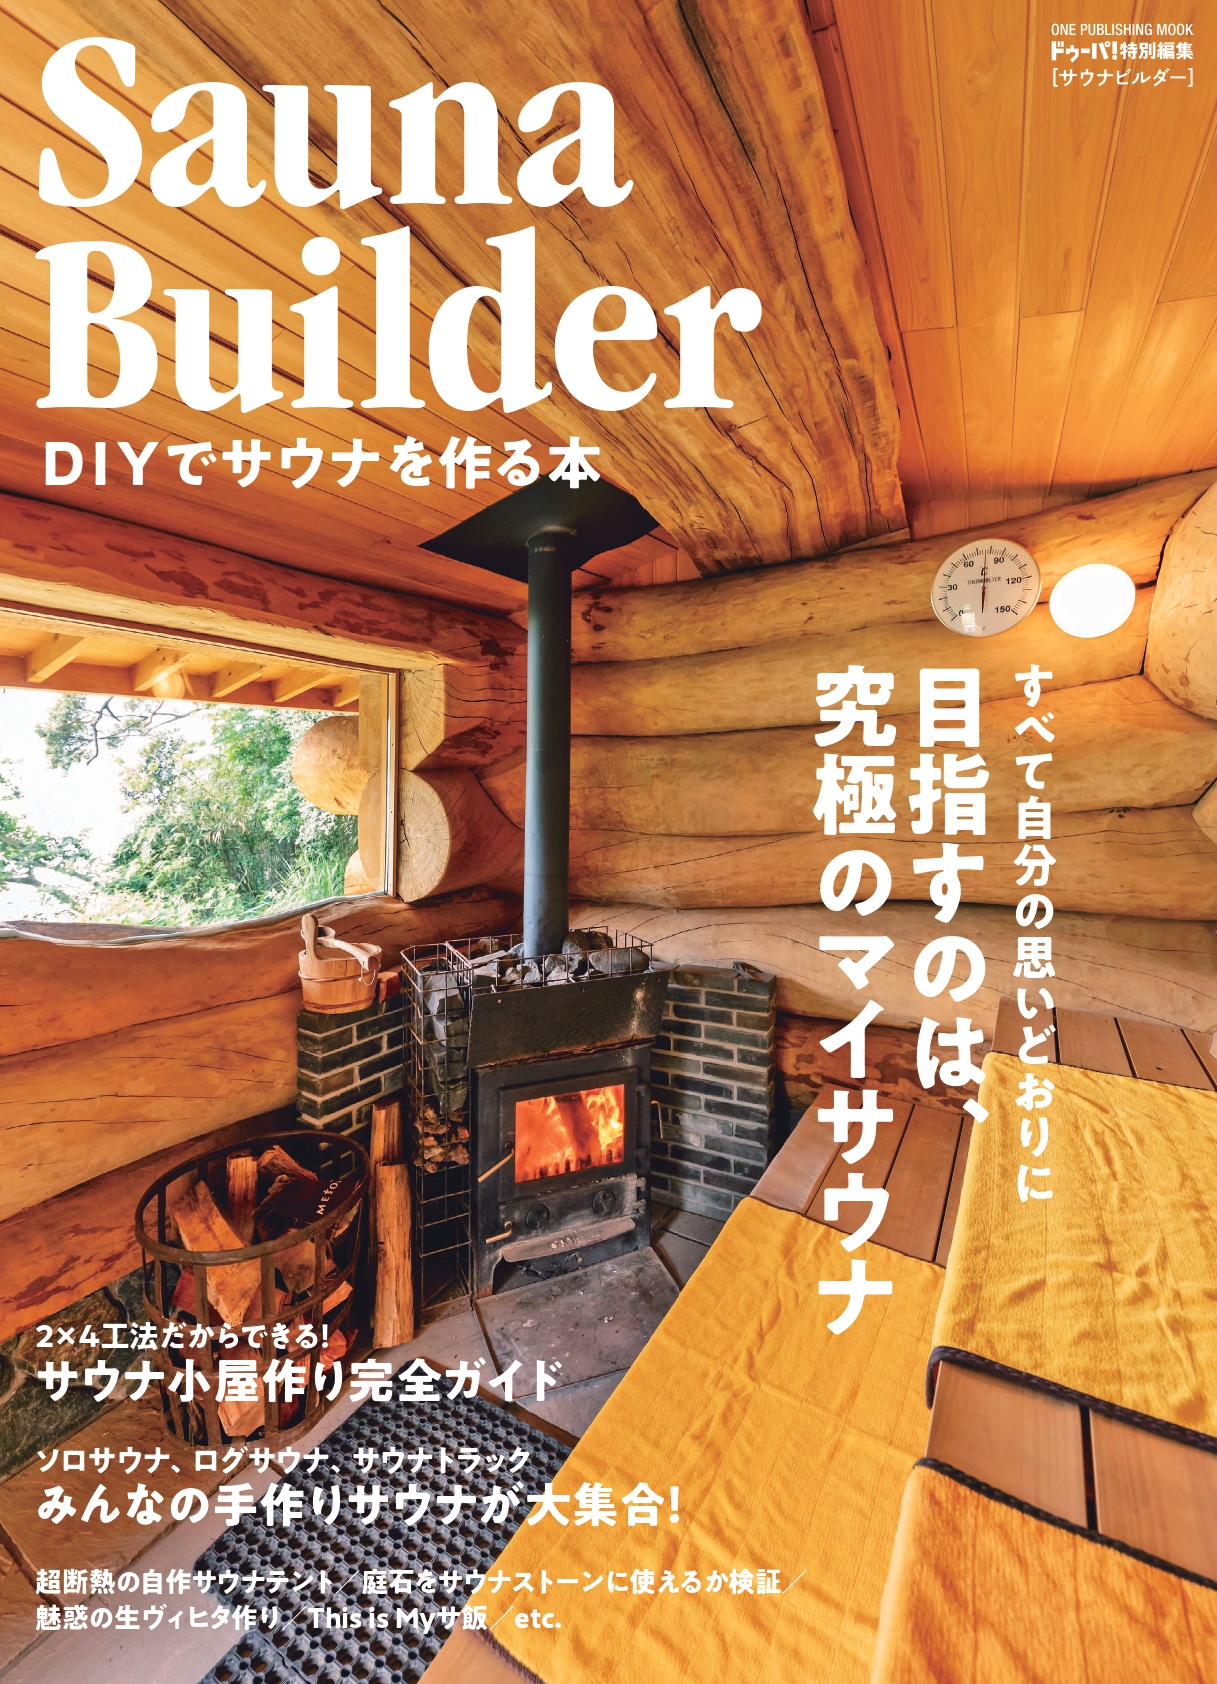 Sauna Builder -DIYでサウナを作る本-